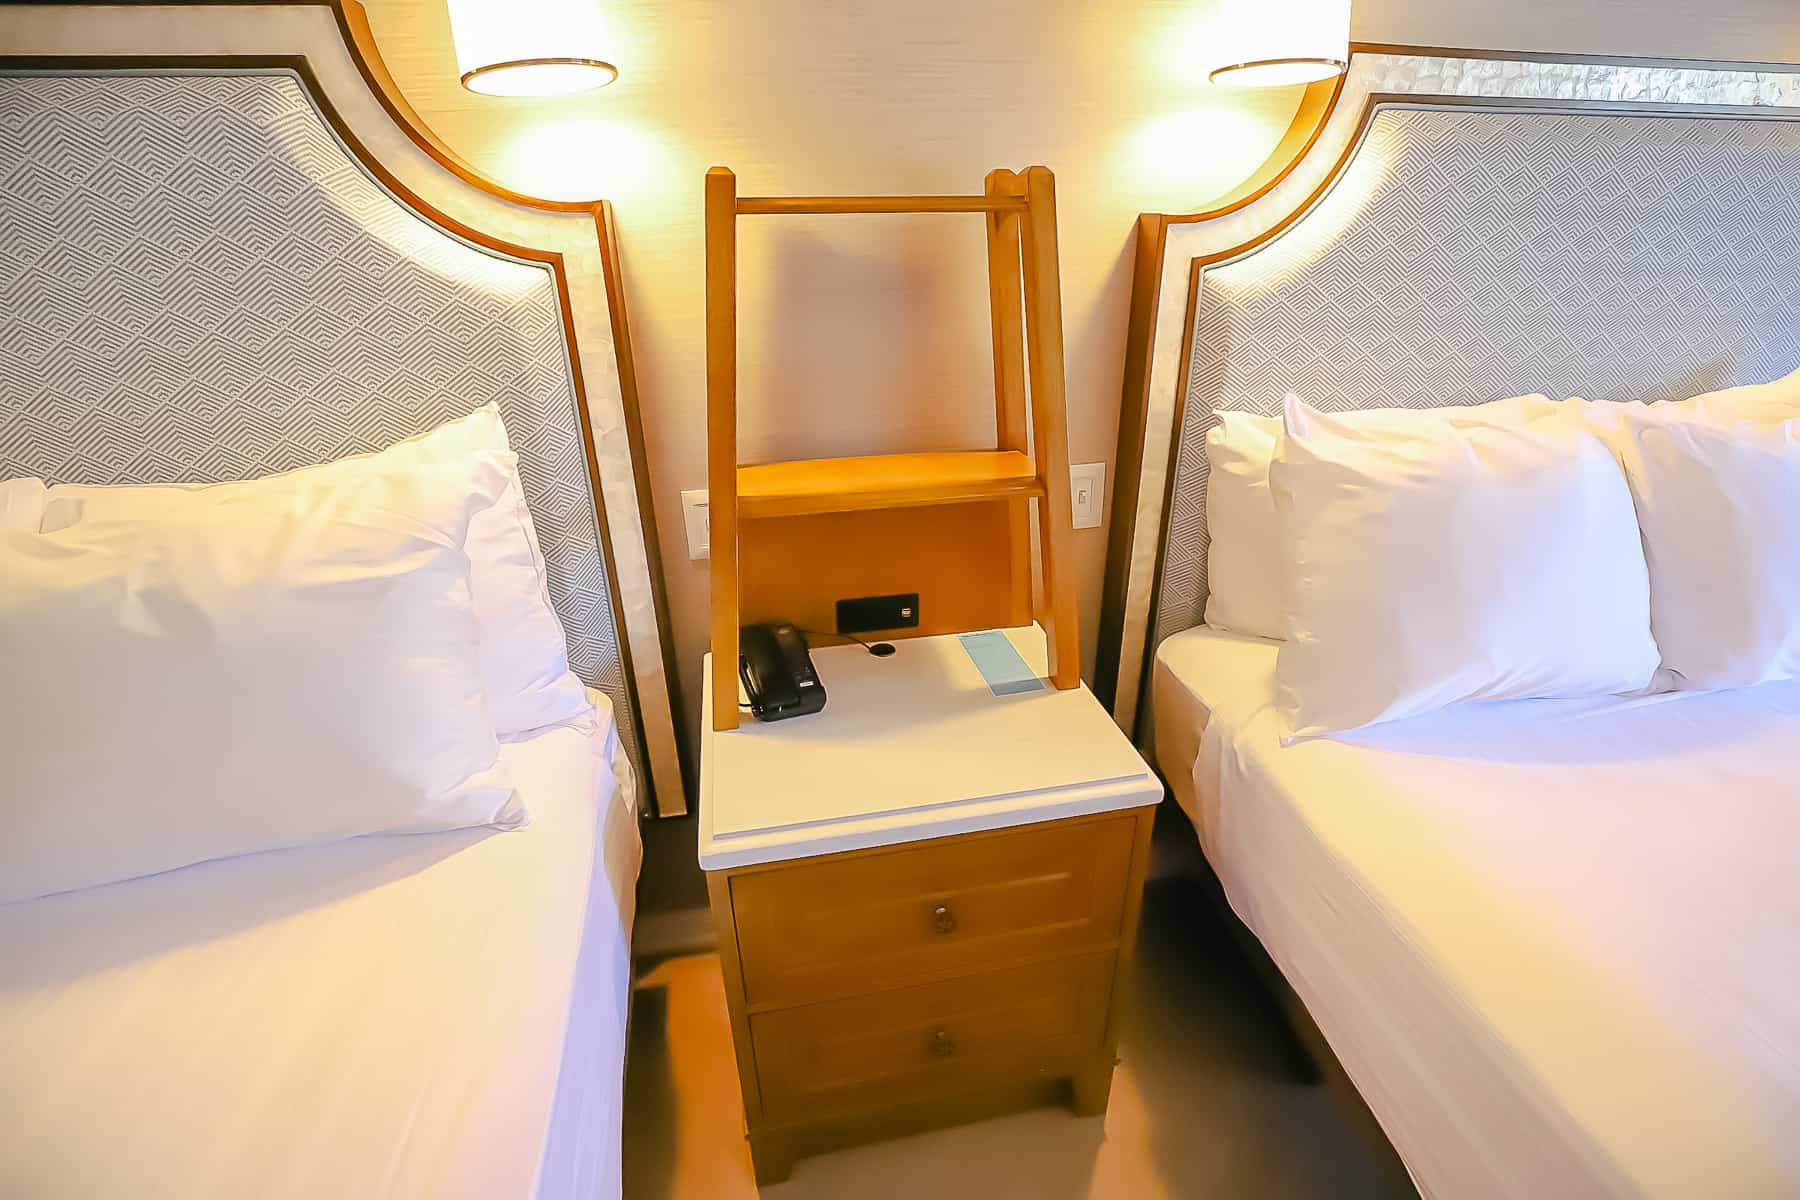 nightstand between the two queen beds